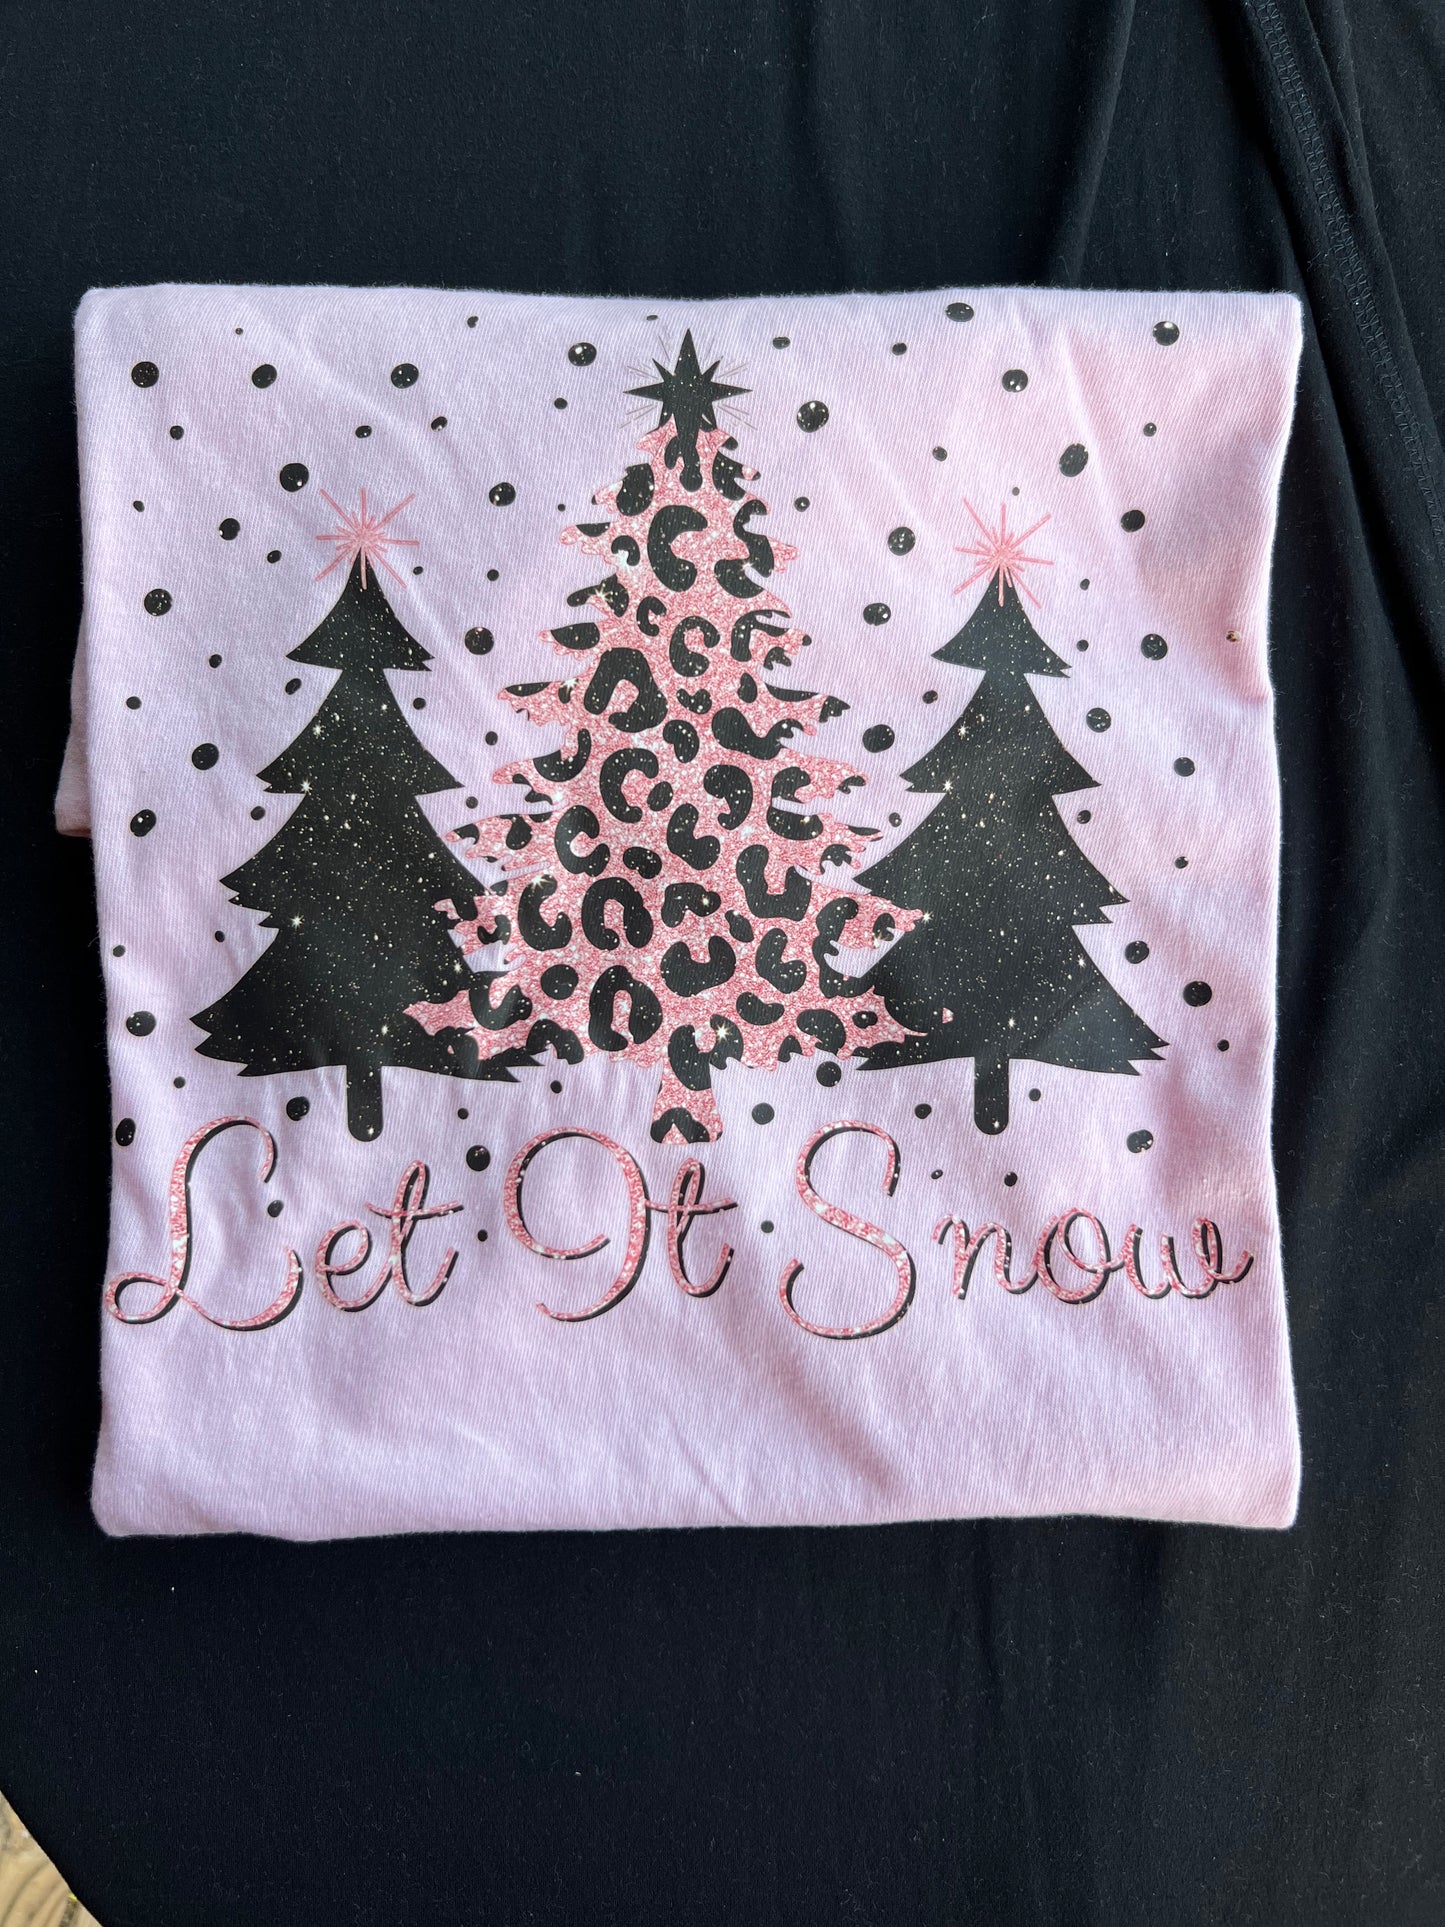 Let it Snow T-Shirt - Large